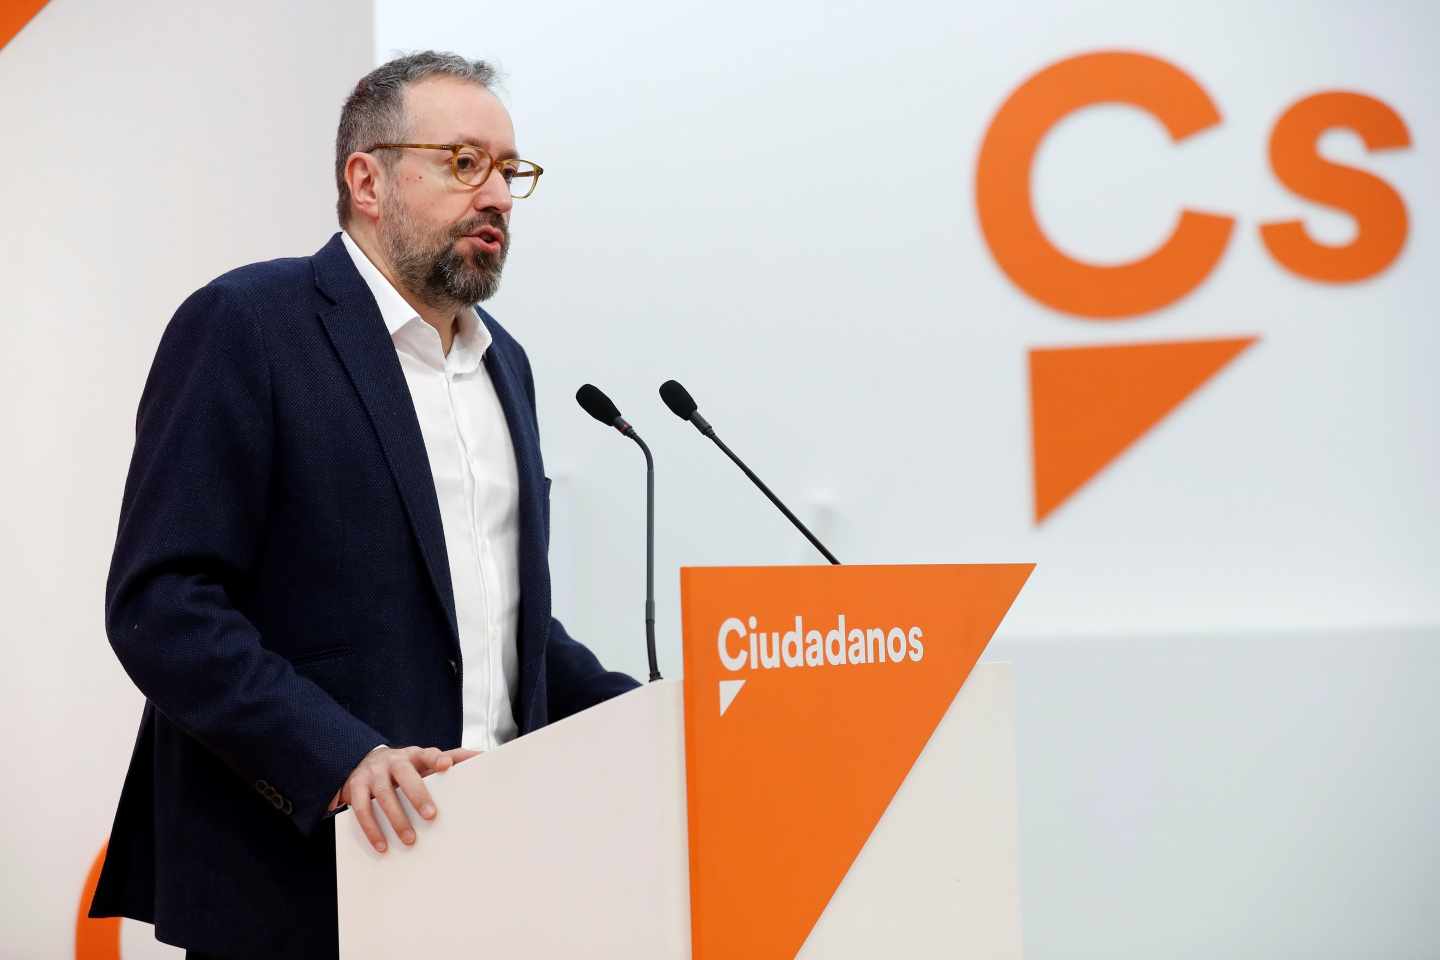 El portavoz parlamentario de Ciudadanos, Juan Carlos Girauta, durante la rueda de prensa tras la reunión del Comité Permanente de Ciudadanos.